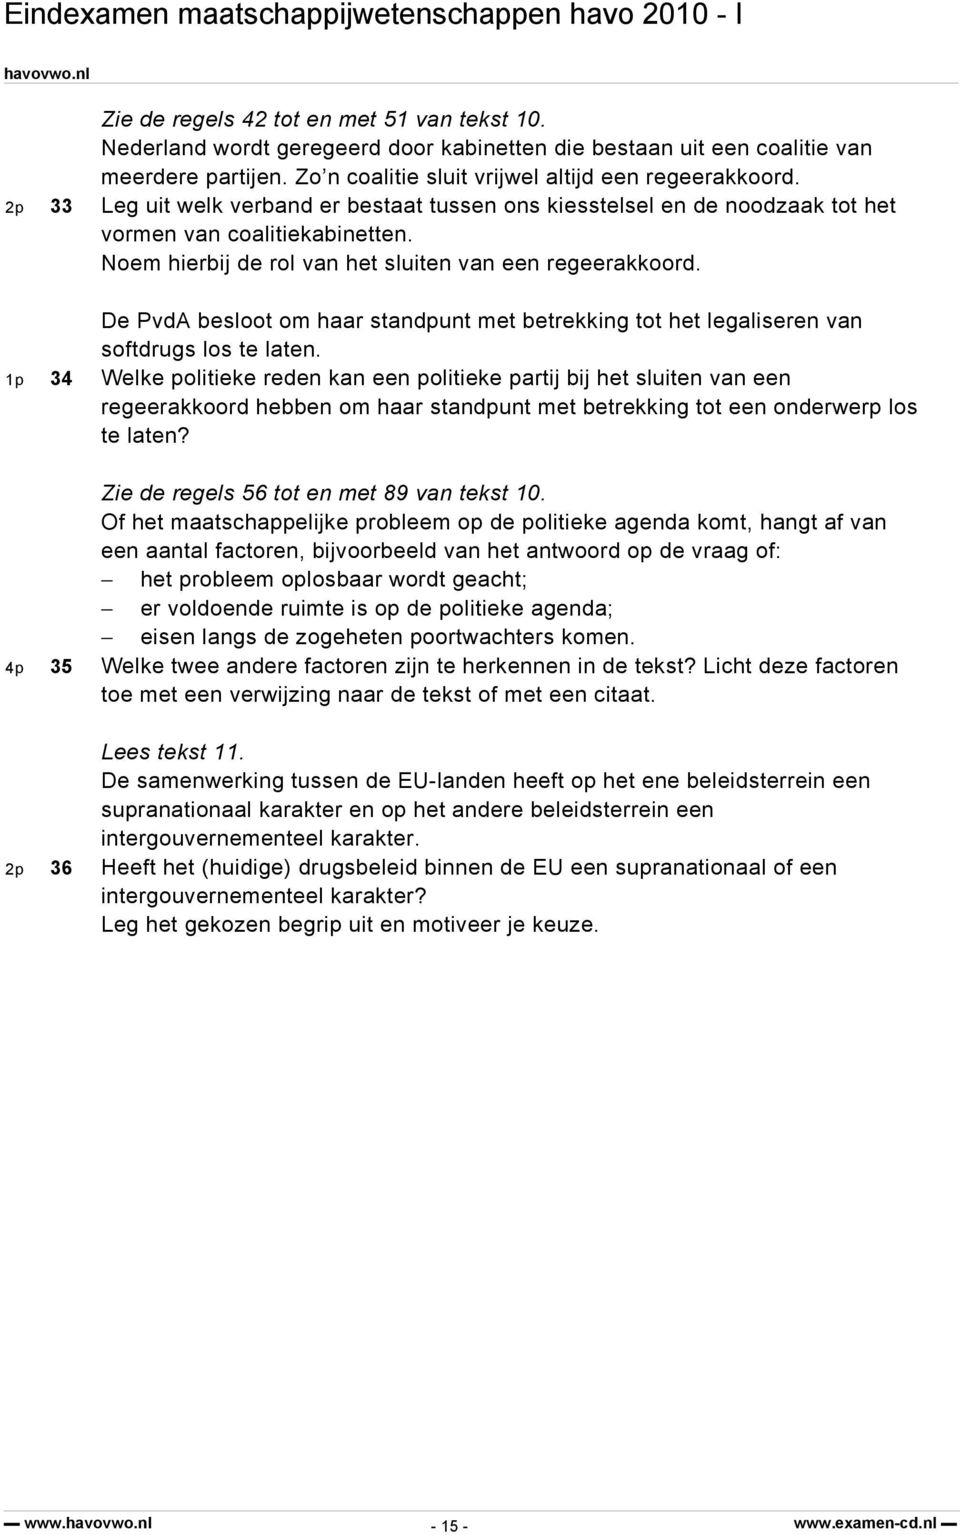 De PvdA besloot om haar standpunt met betrekking tot het legaliseren van softdrugs los te laten.